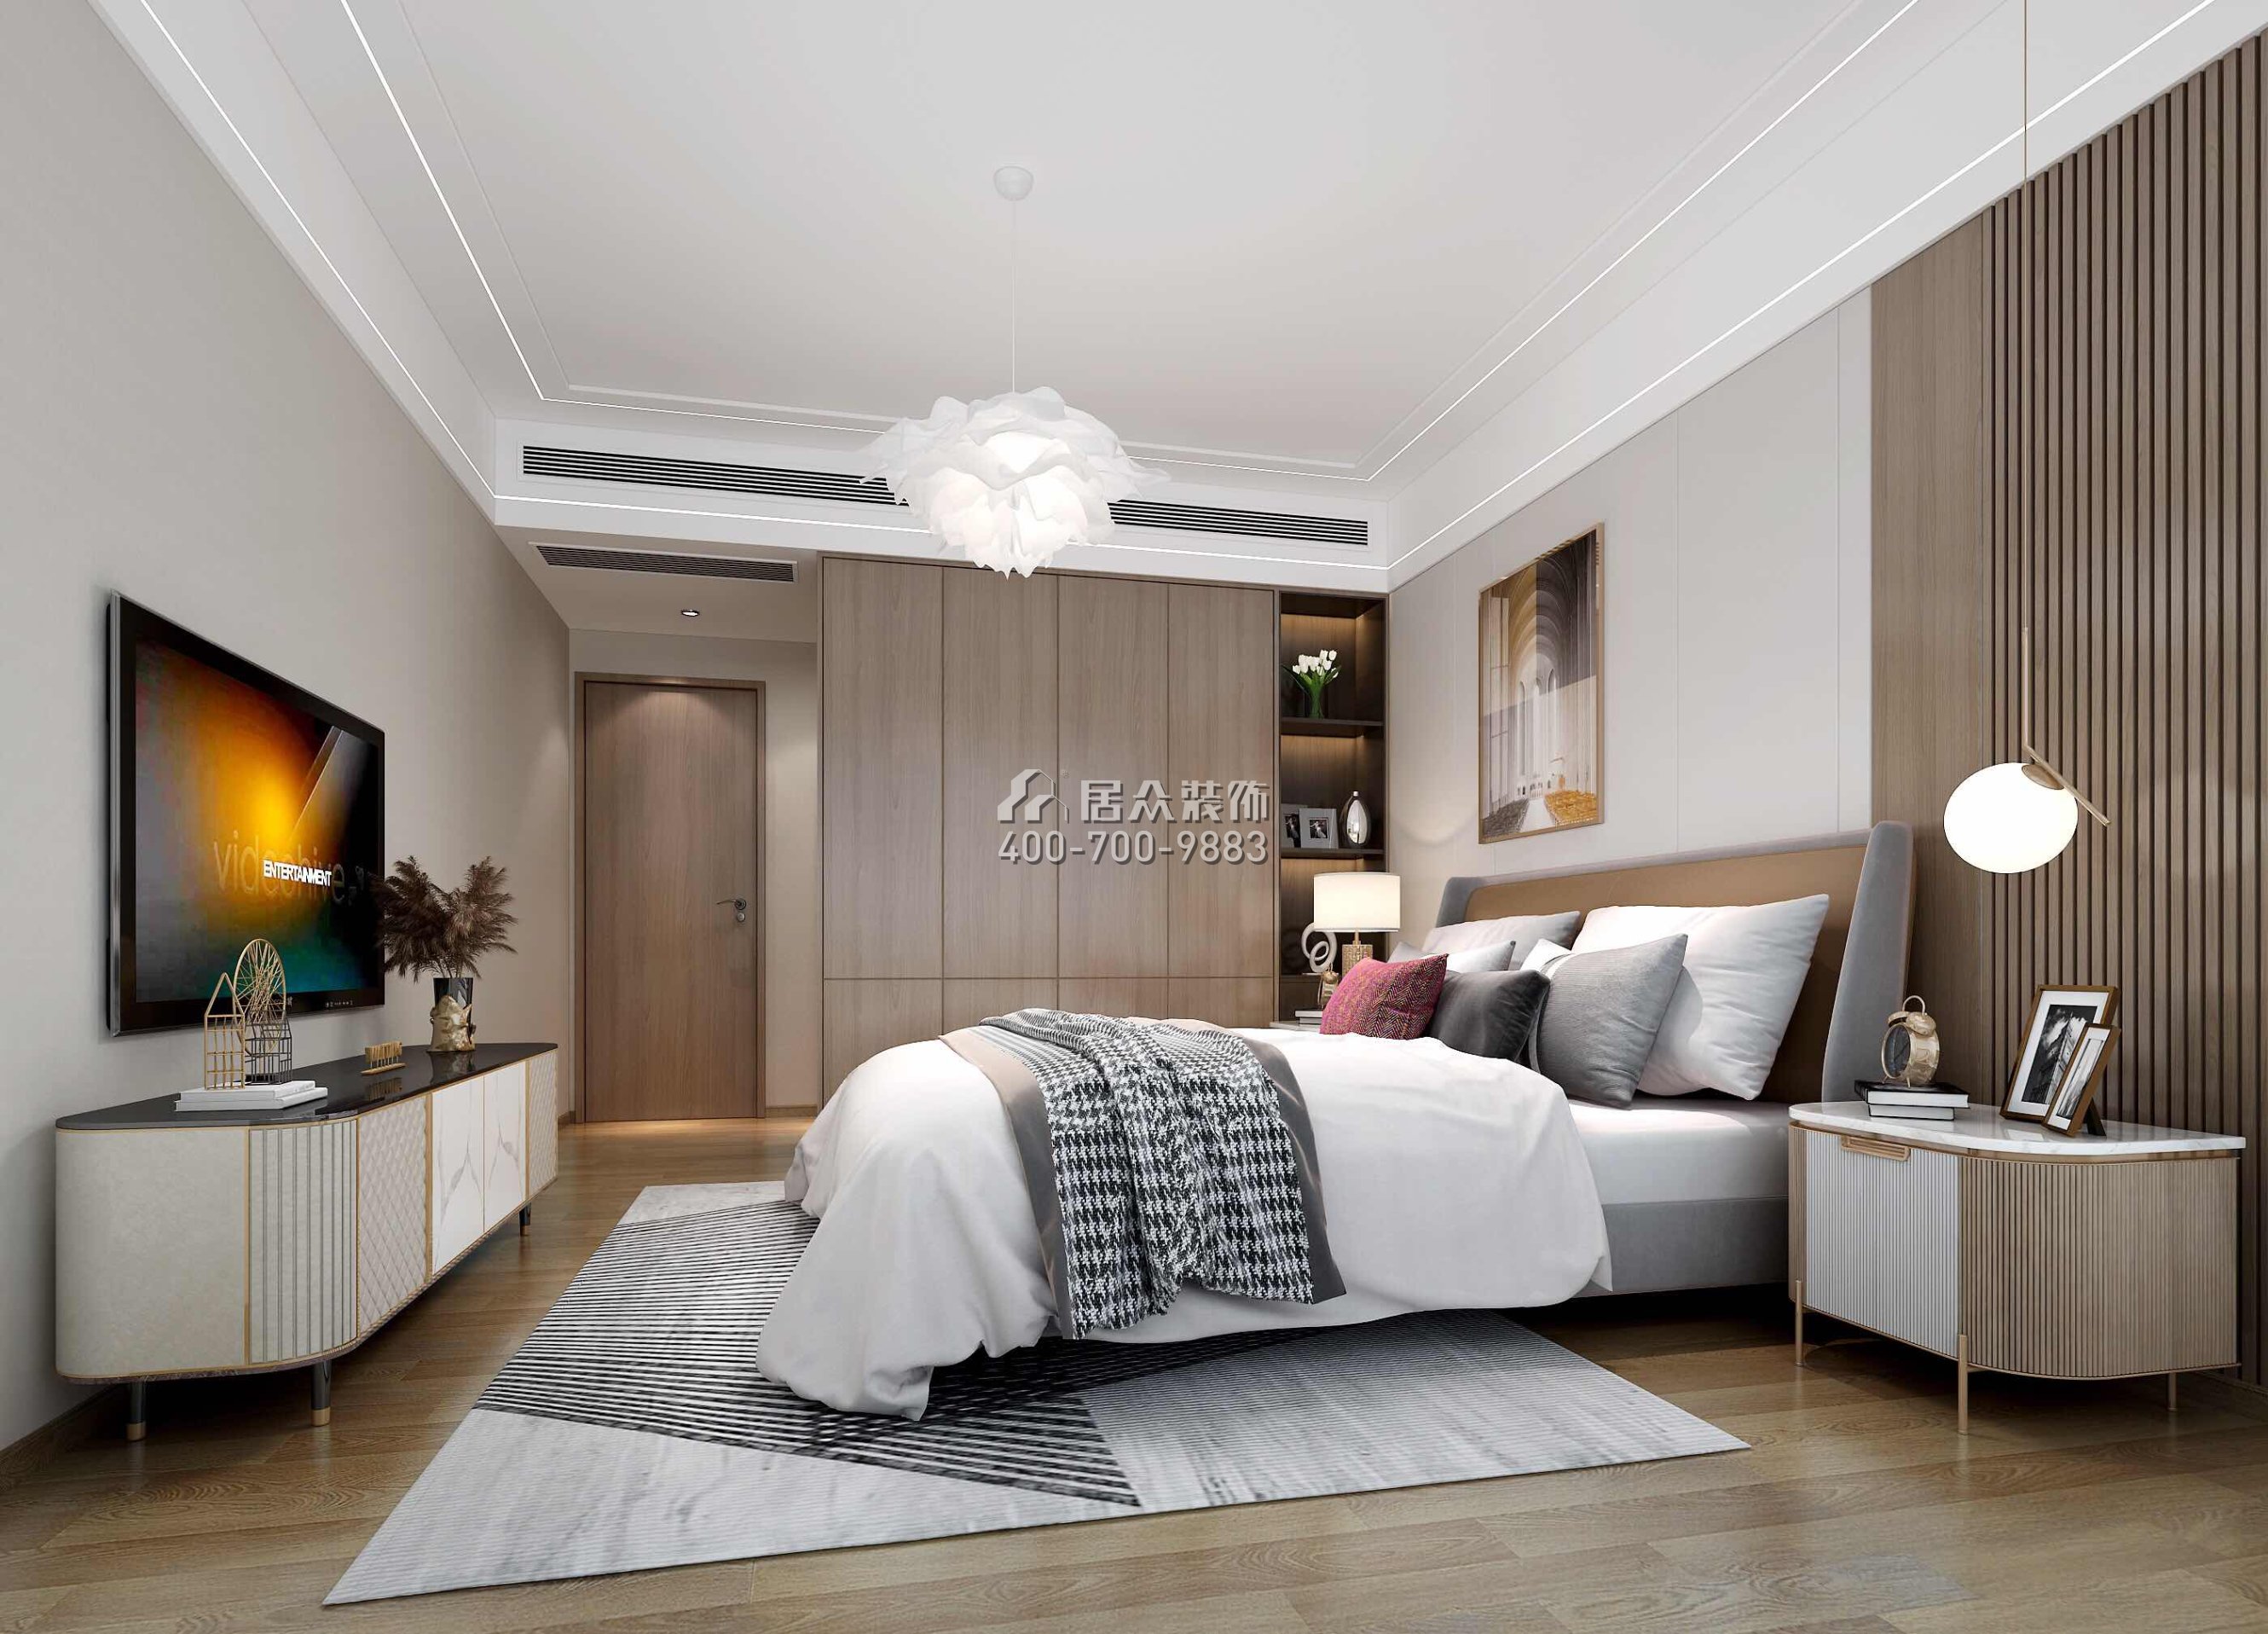 星河丹堤152平方米现代简约风格平层户型卧室装修效果图